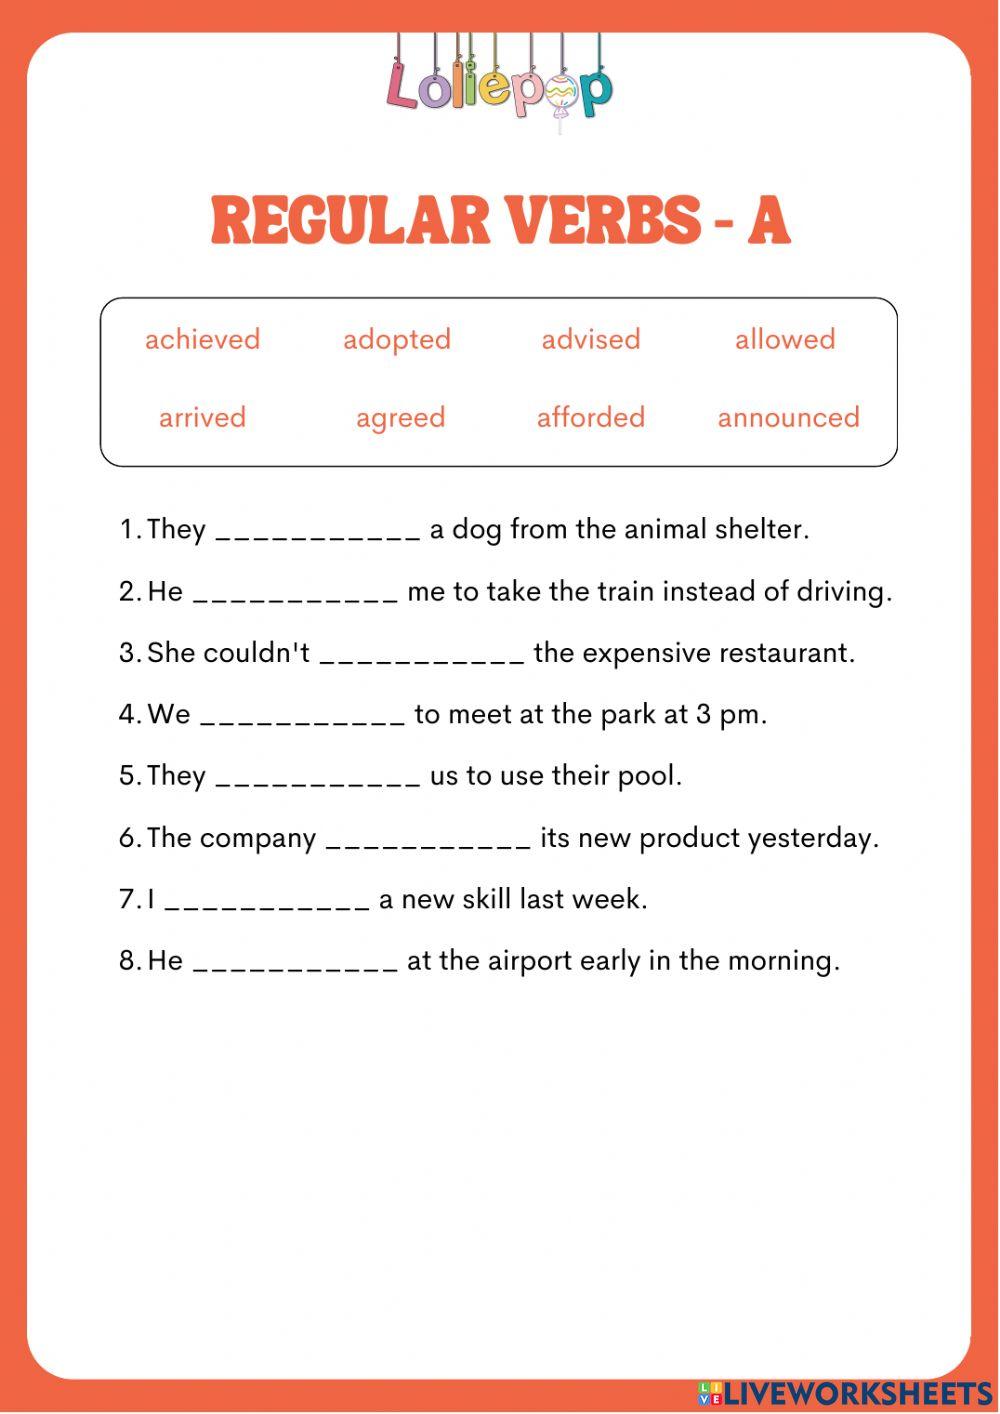 Regular verbs. a-verbs